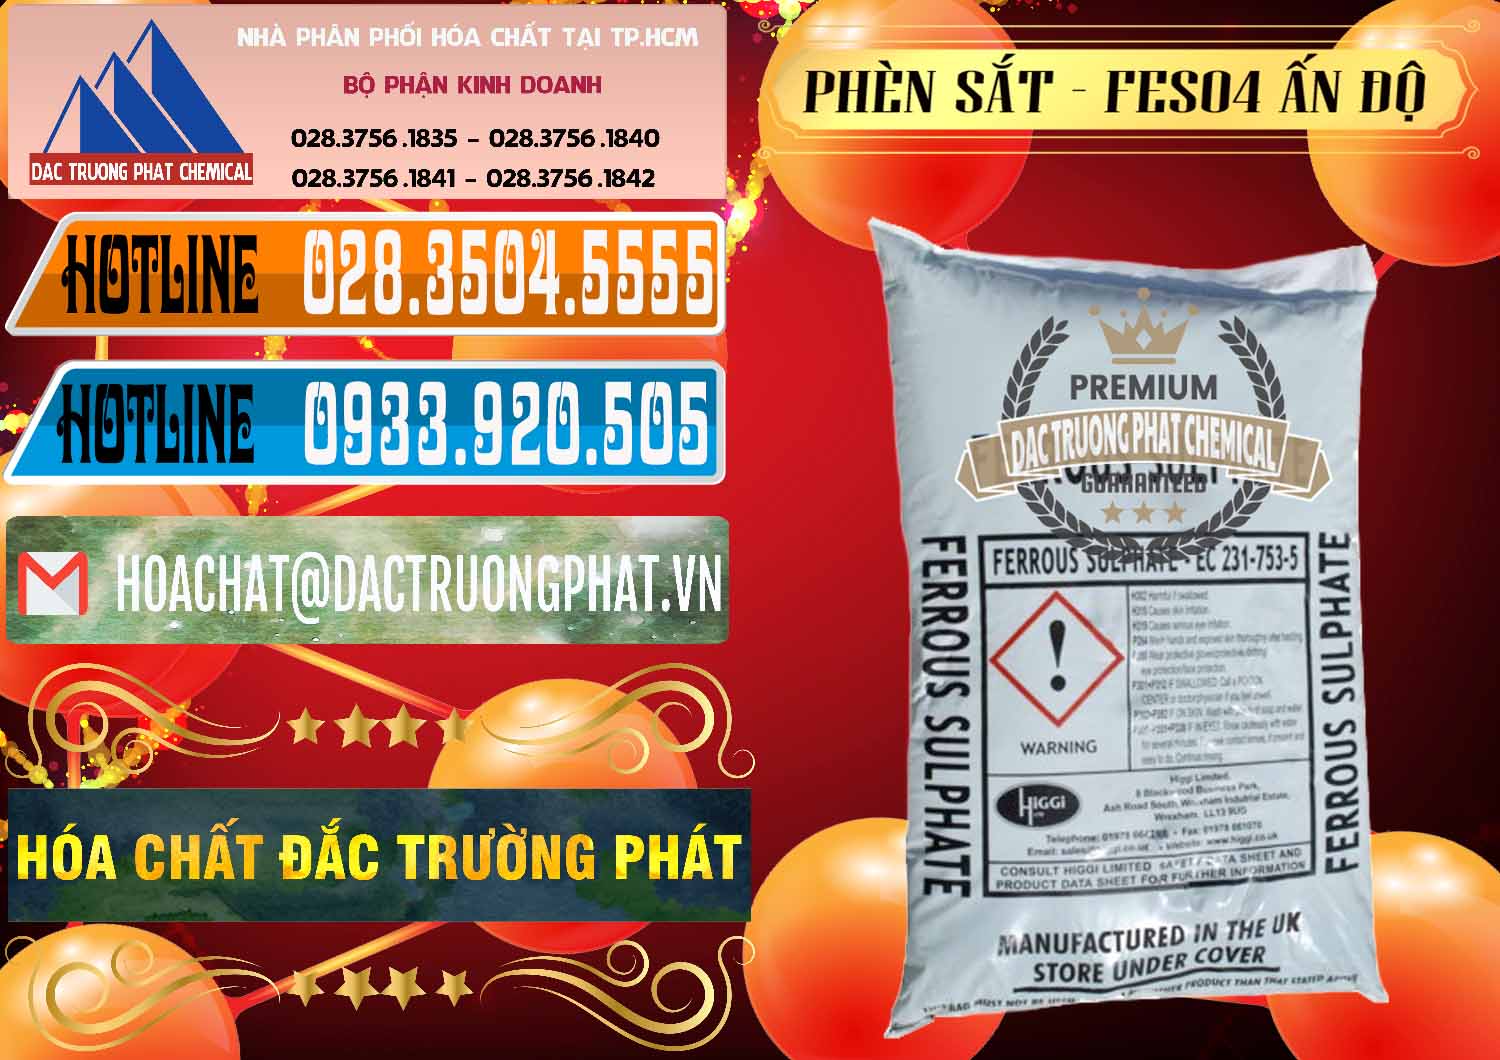 Công ty bán và phân phối Phèn Sắt - FeSO4.7H2O Ấn Độ India - 0354 - Cung cấp _ phân phối hóa chất tại TP.HCM - stmp.net